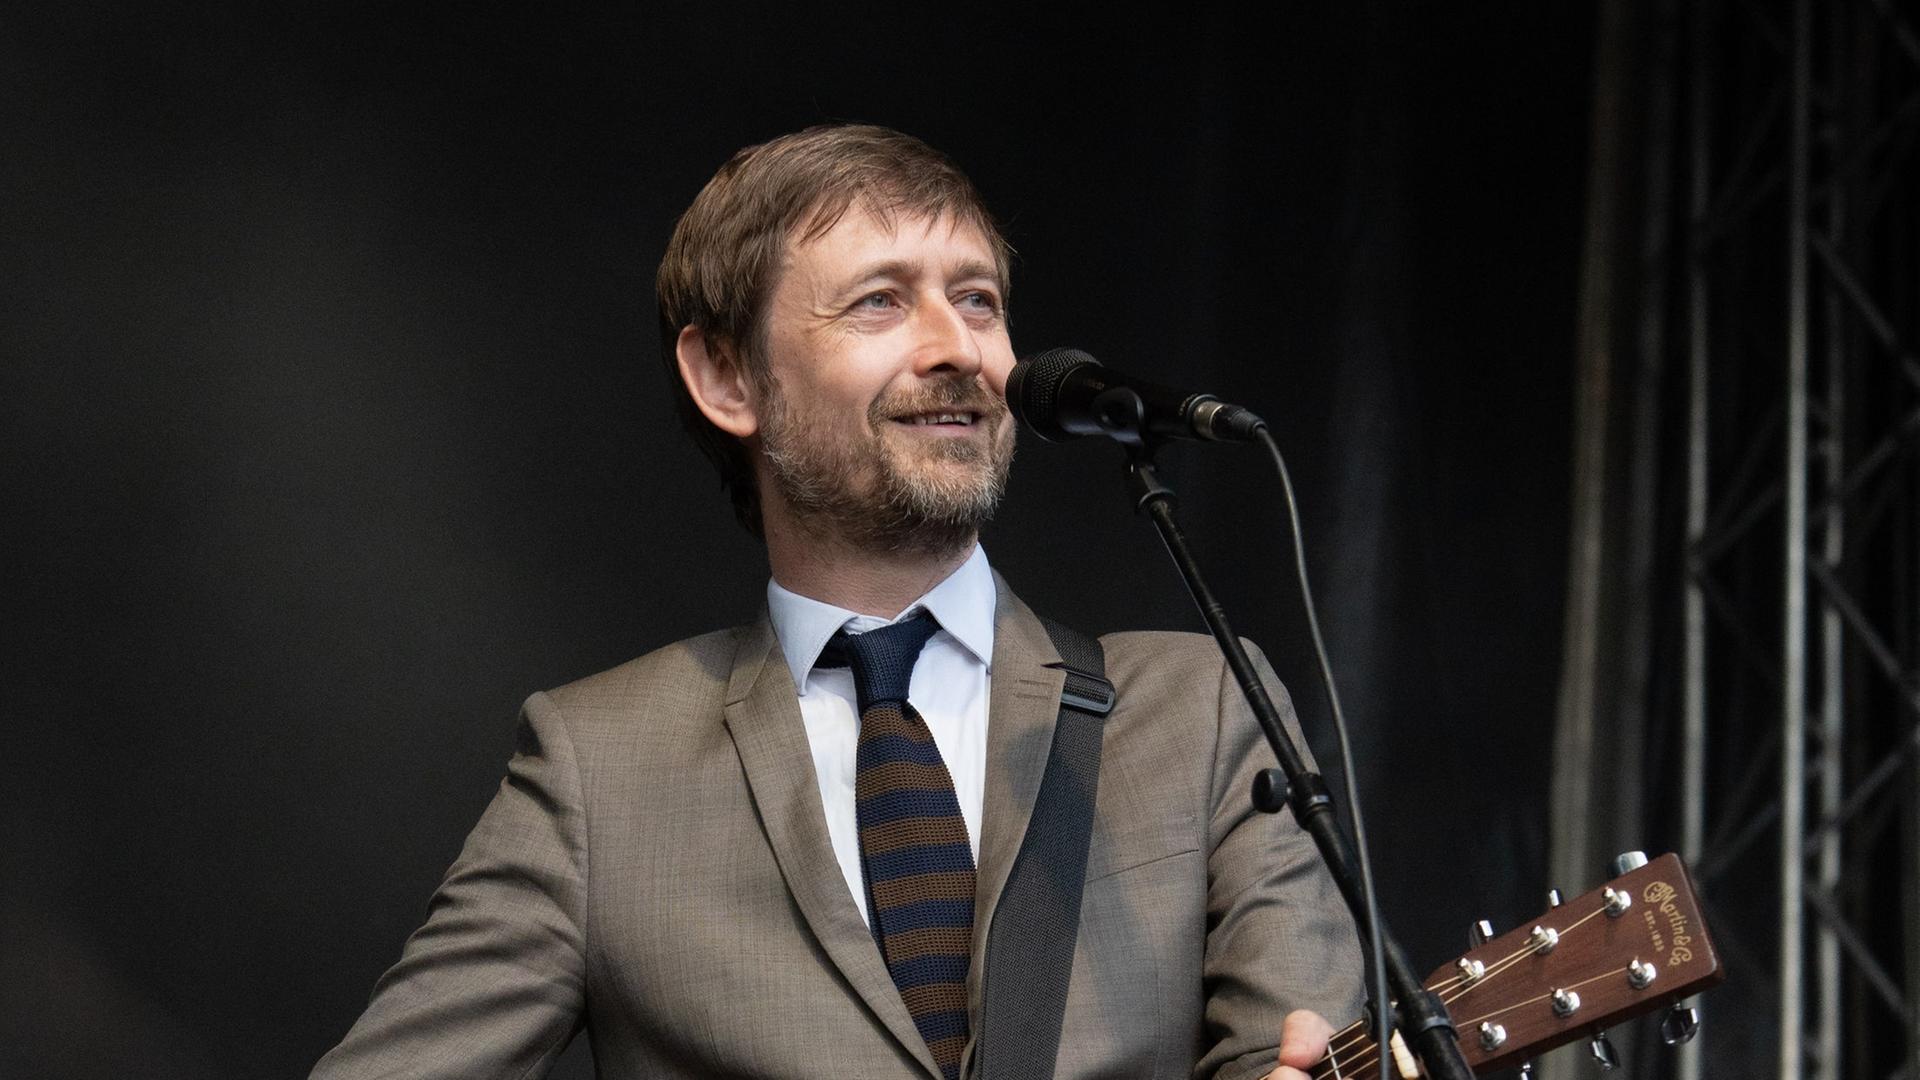 Ein Mann in einem grauen Anzug steht vor einem Mikrofon, er hält eine Gitarre in den Händen.